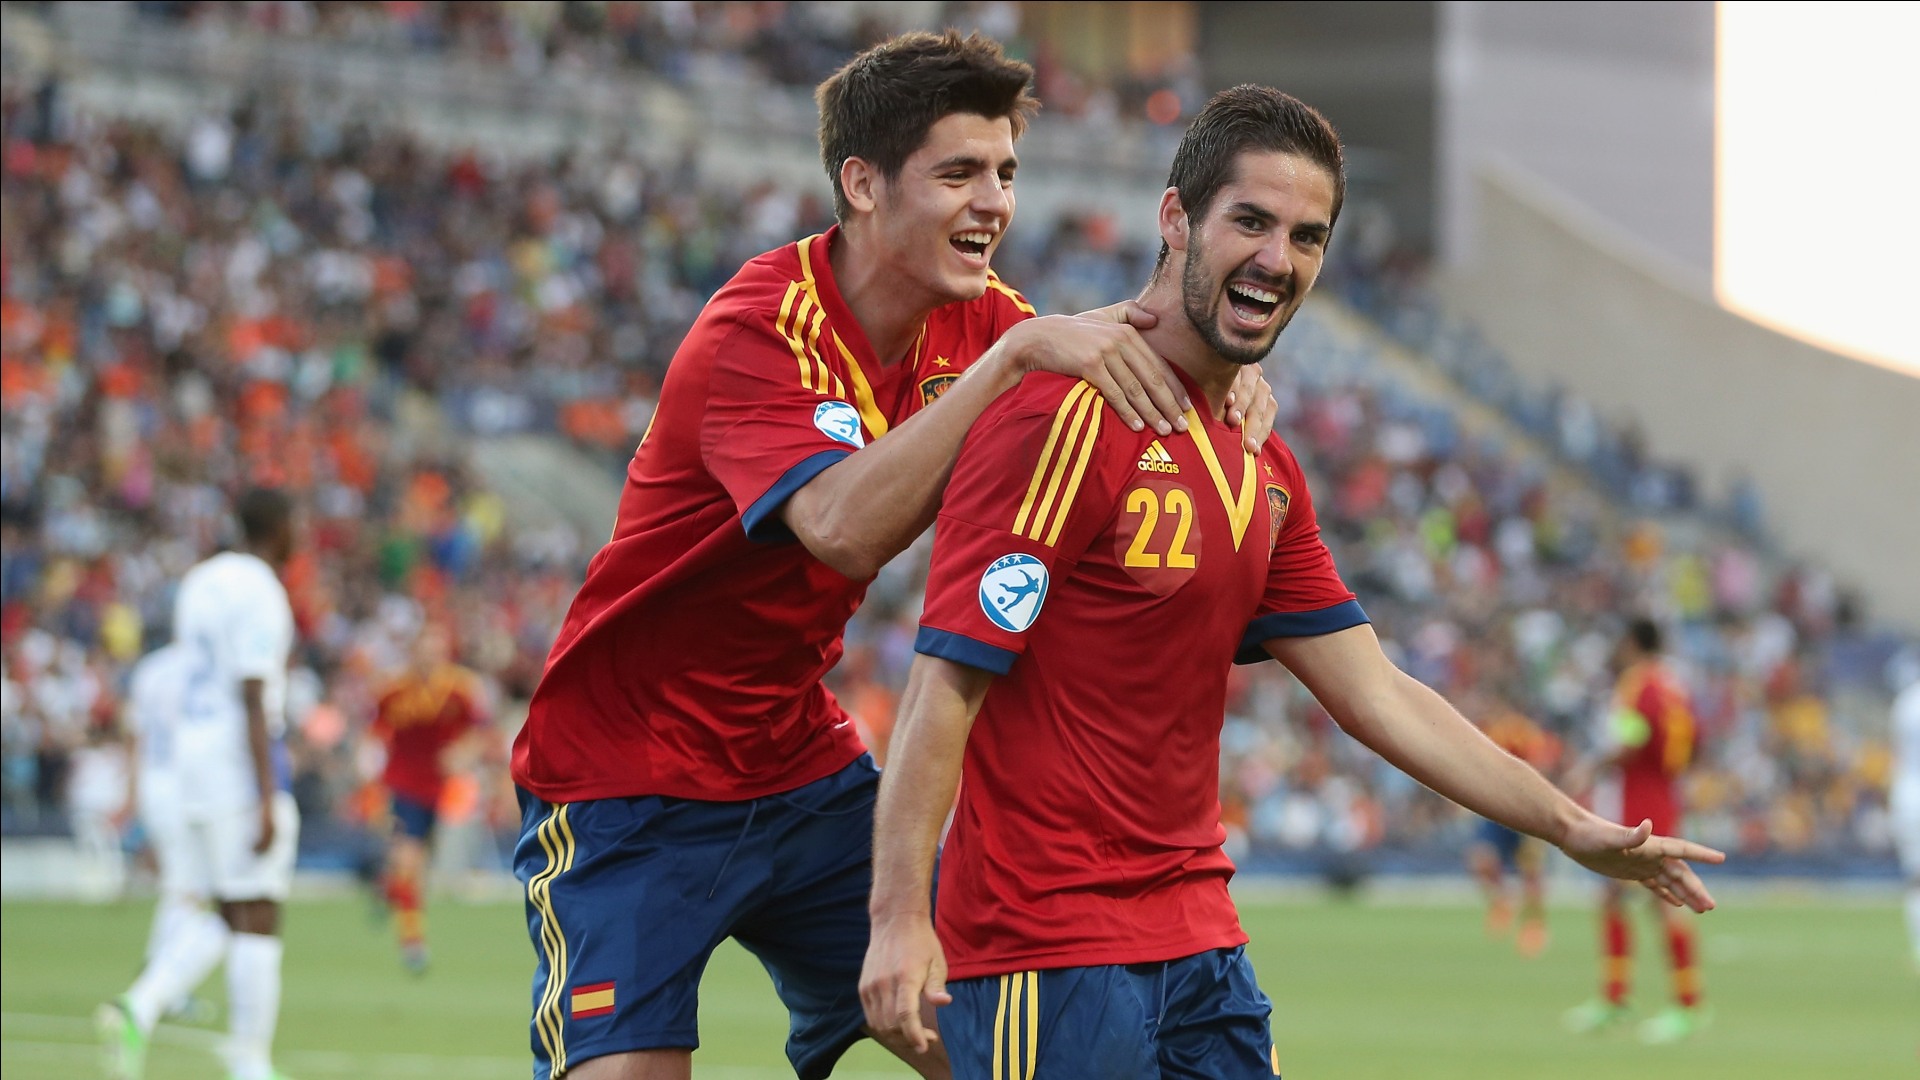 イスコ レアルマドリー スペイン期待の若手選手情報 プレー動画あり 海外サッカー情報チャンネル